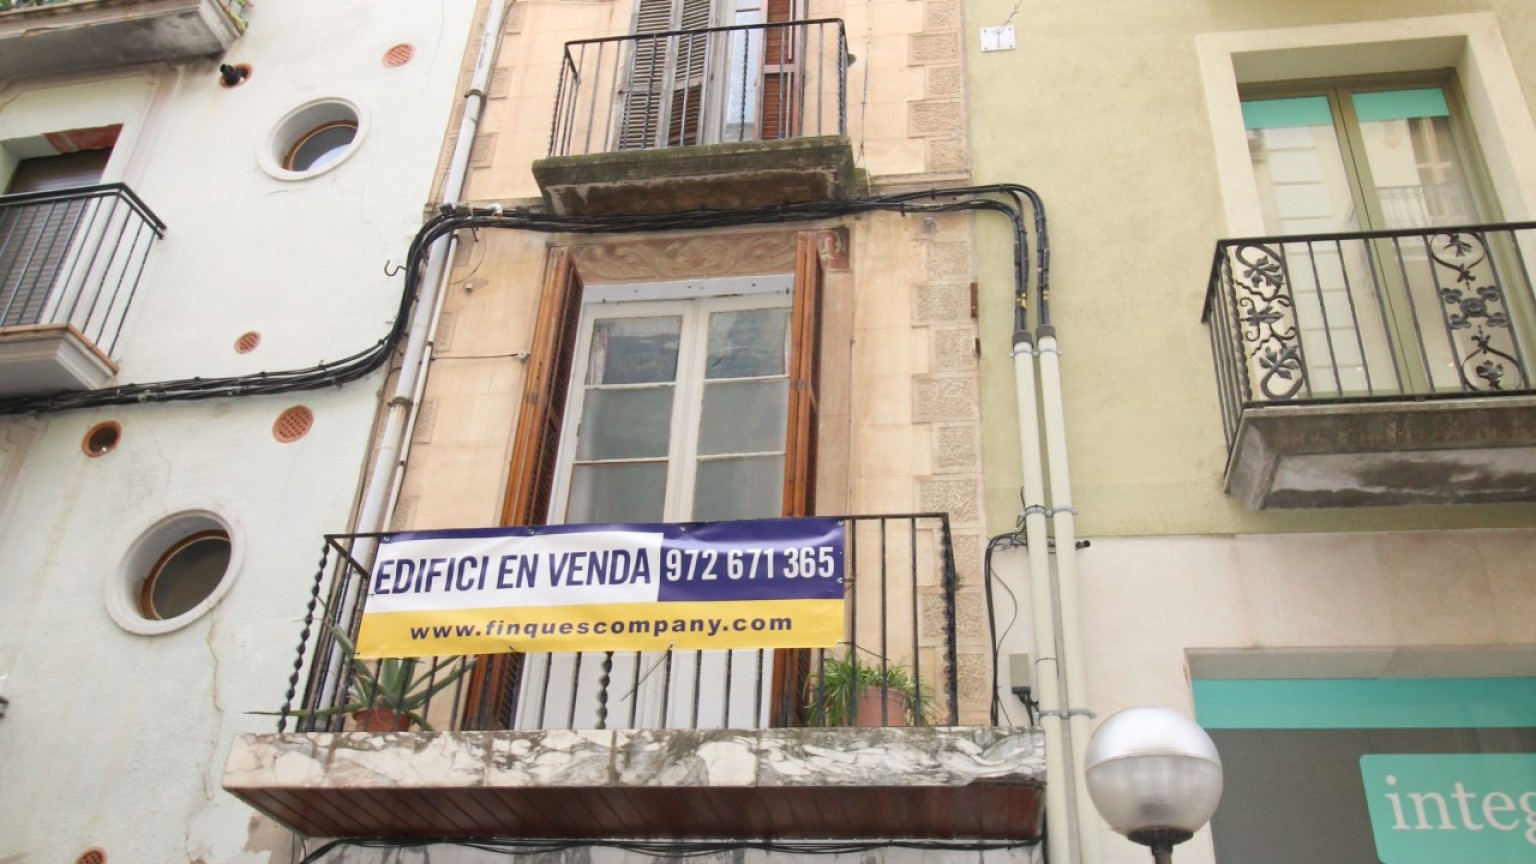 Edificio en venta, de planta baja y tres pisos en el centro de Figueres.